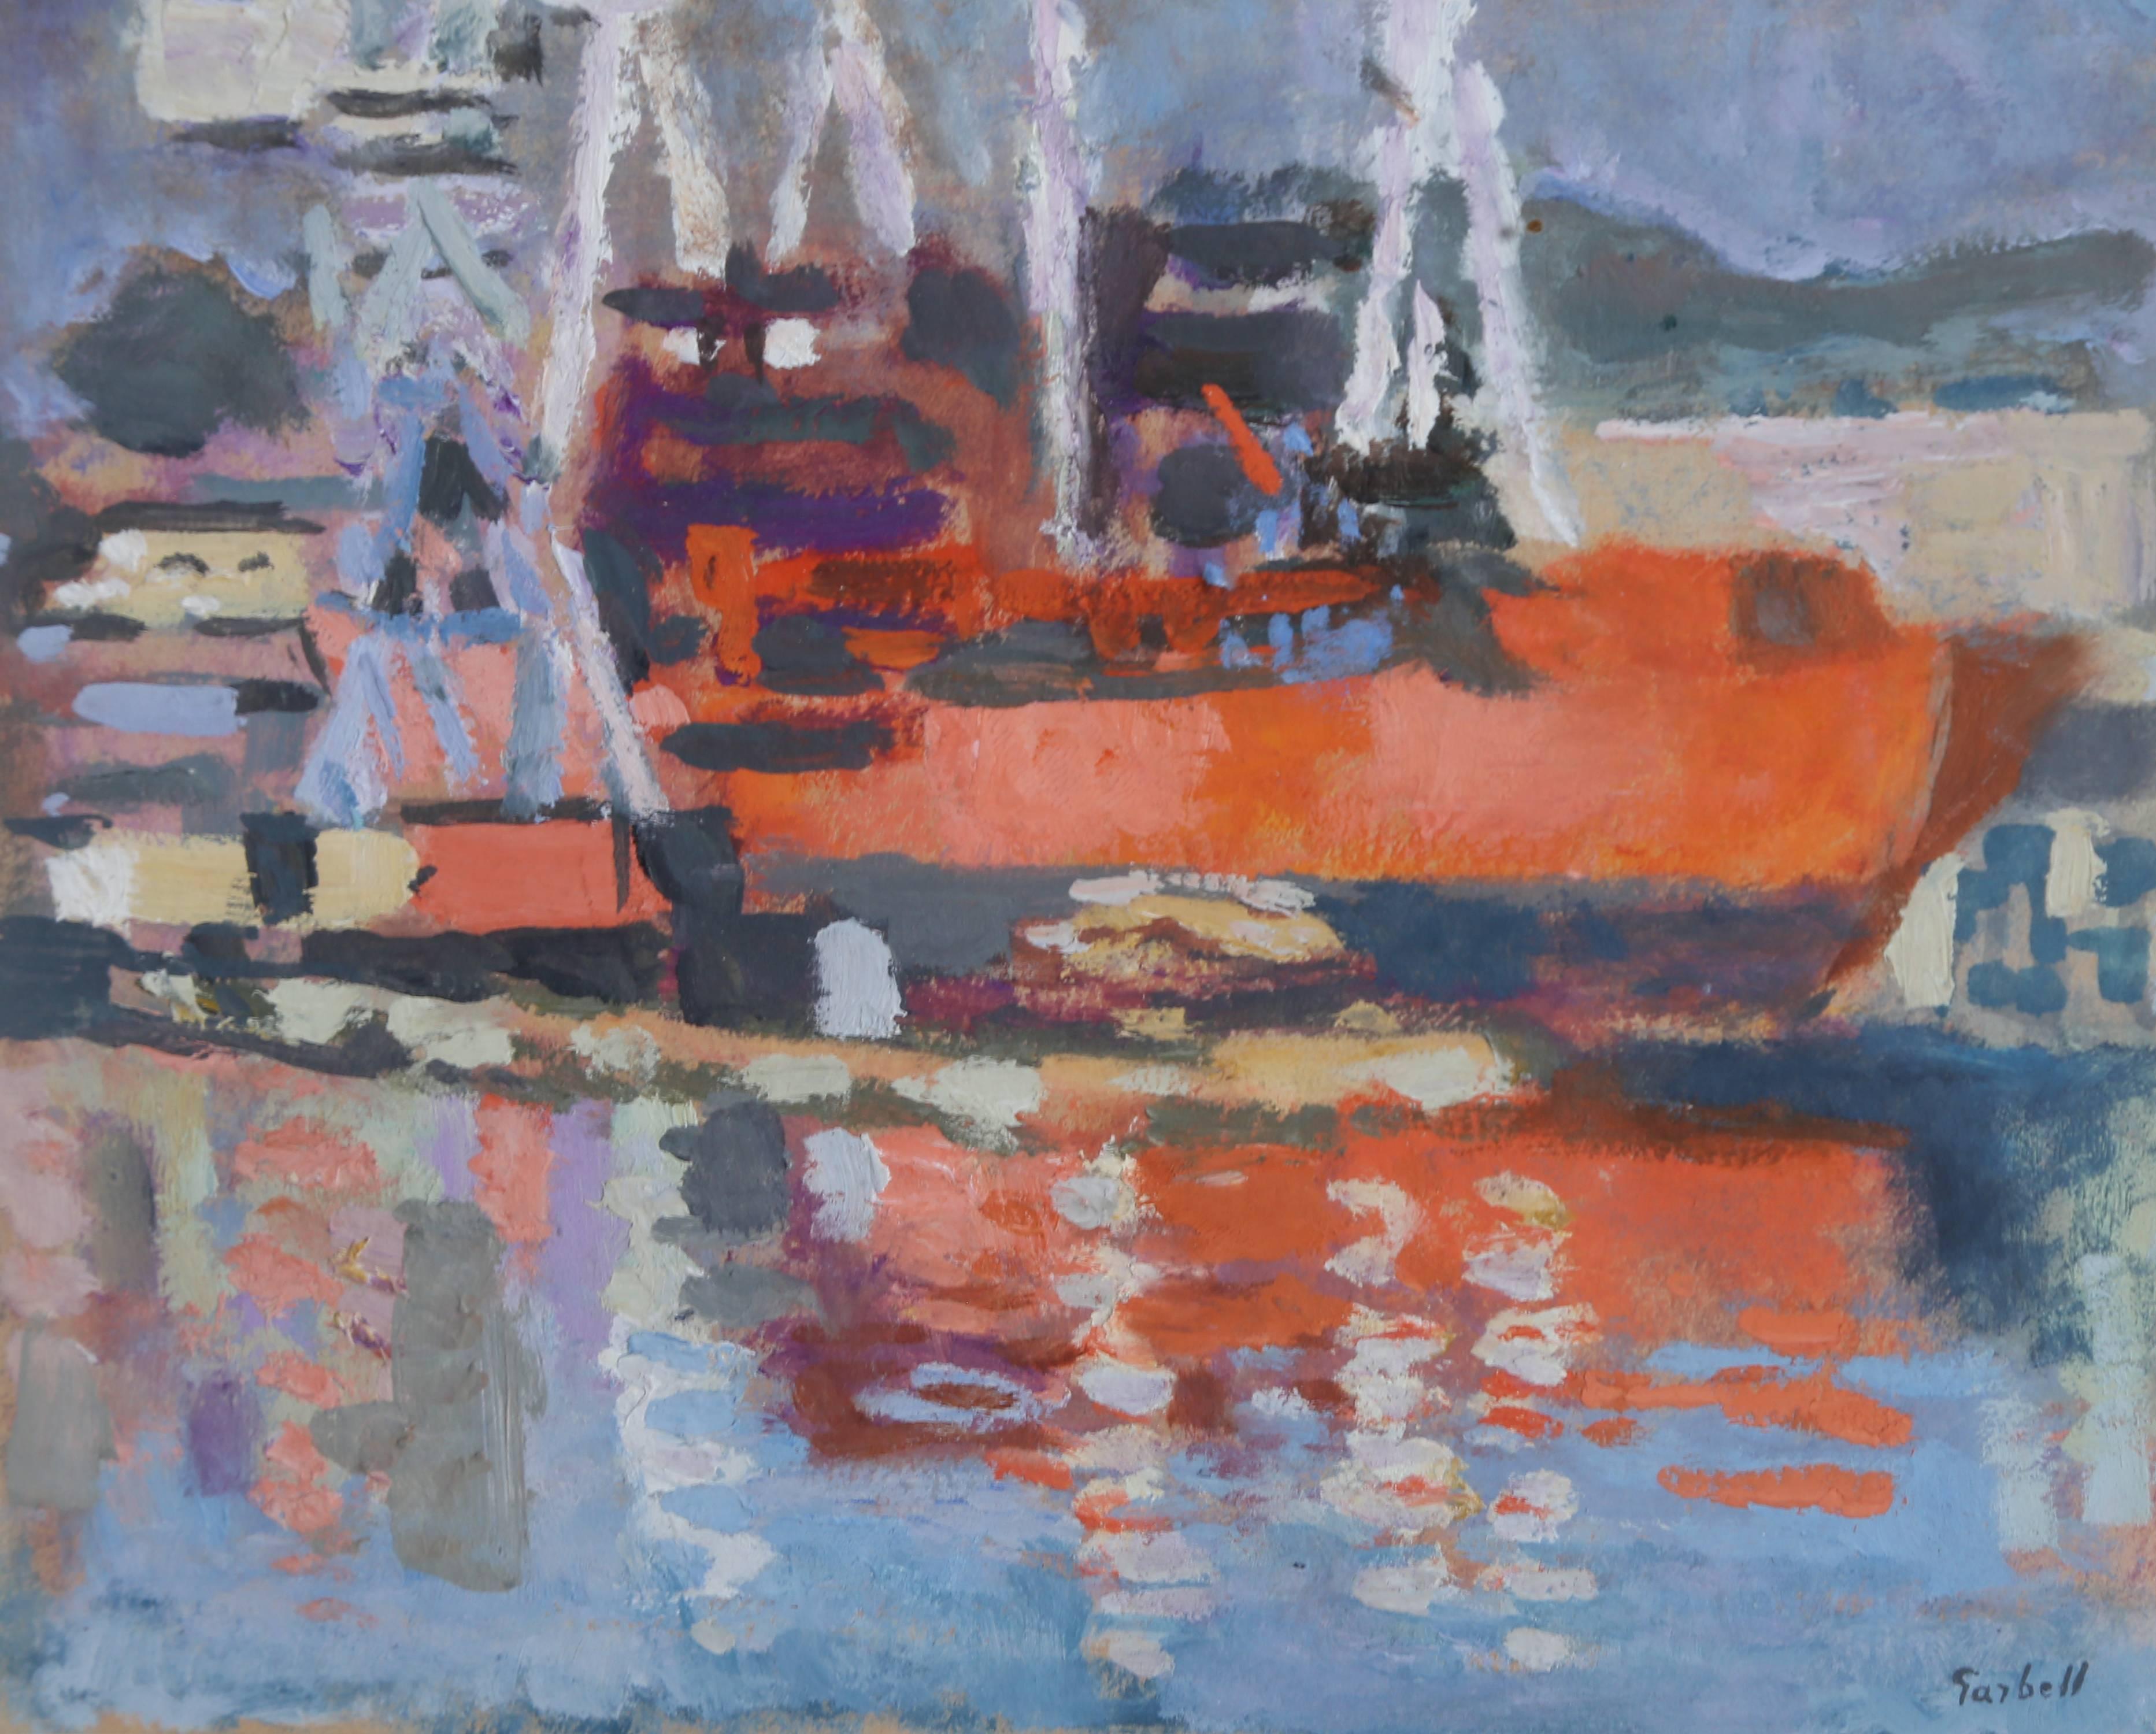 Künstler: Alexandre Sacha Garbell, Franzose (1903 - 1970)
Titel: Orangenschiff im Hafen
Jahr: 1958
Medium: Gouache auf Papier, signiert 
Bildgröße: 6,25 x 7,75 Zoll
Rahmengröße: 14,75 x 16 Zoll